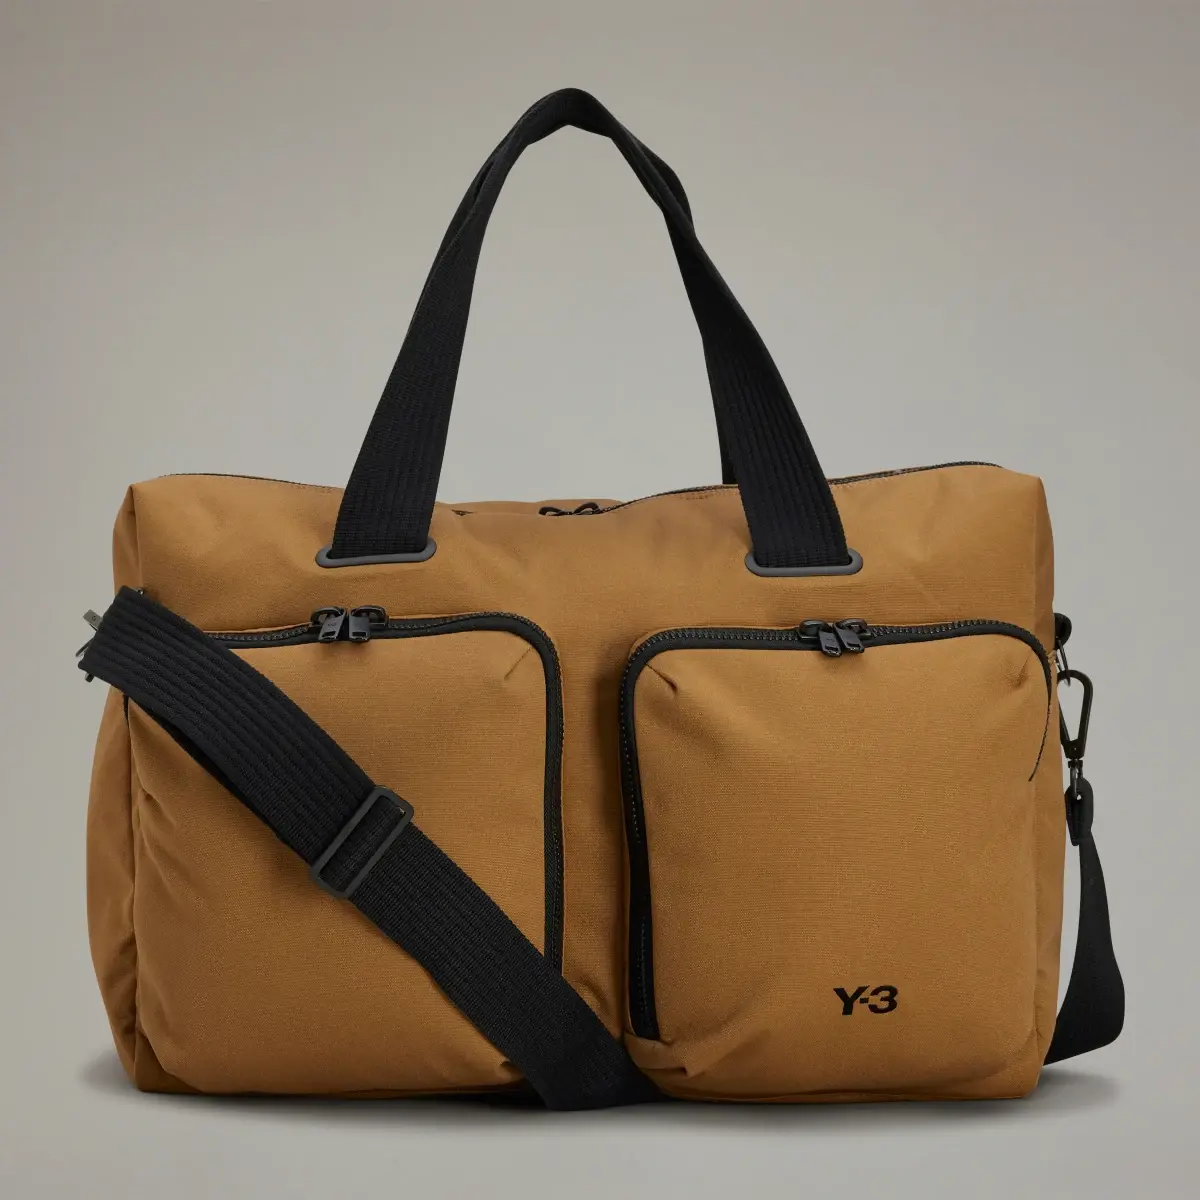 Adidas Y-3 Travel Bag. 2